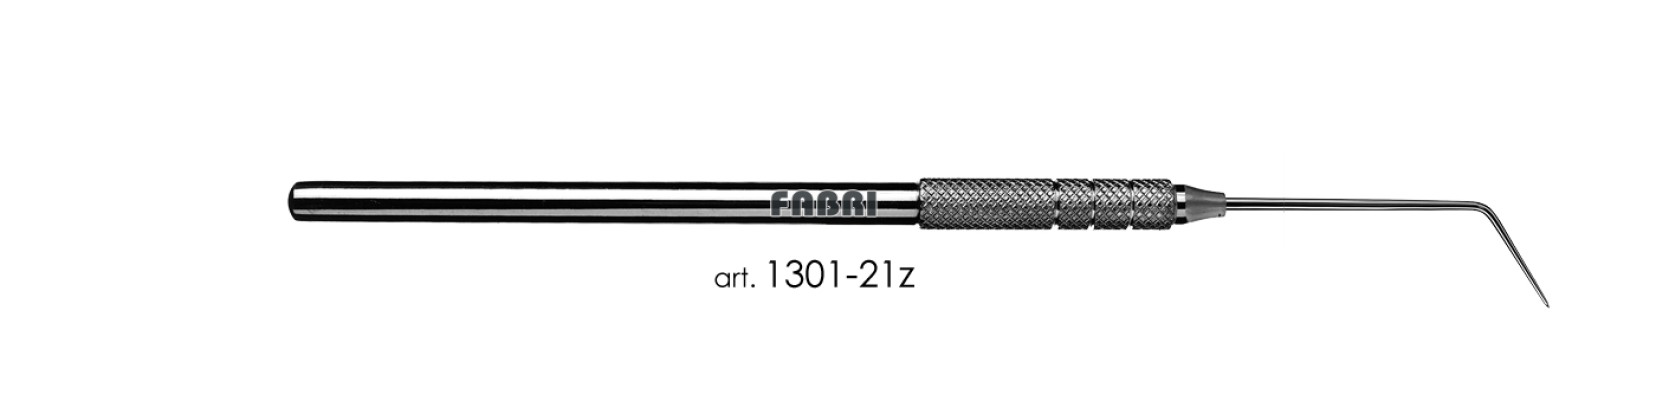 Зонд общего обследования Fabri 1301-21z